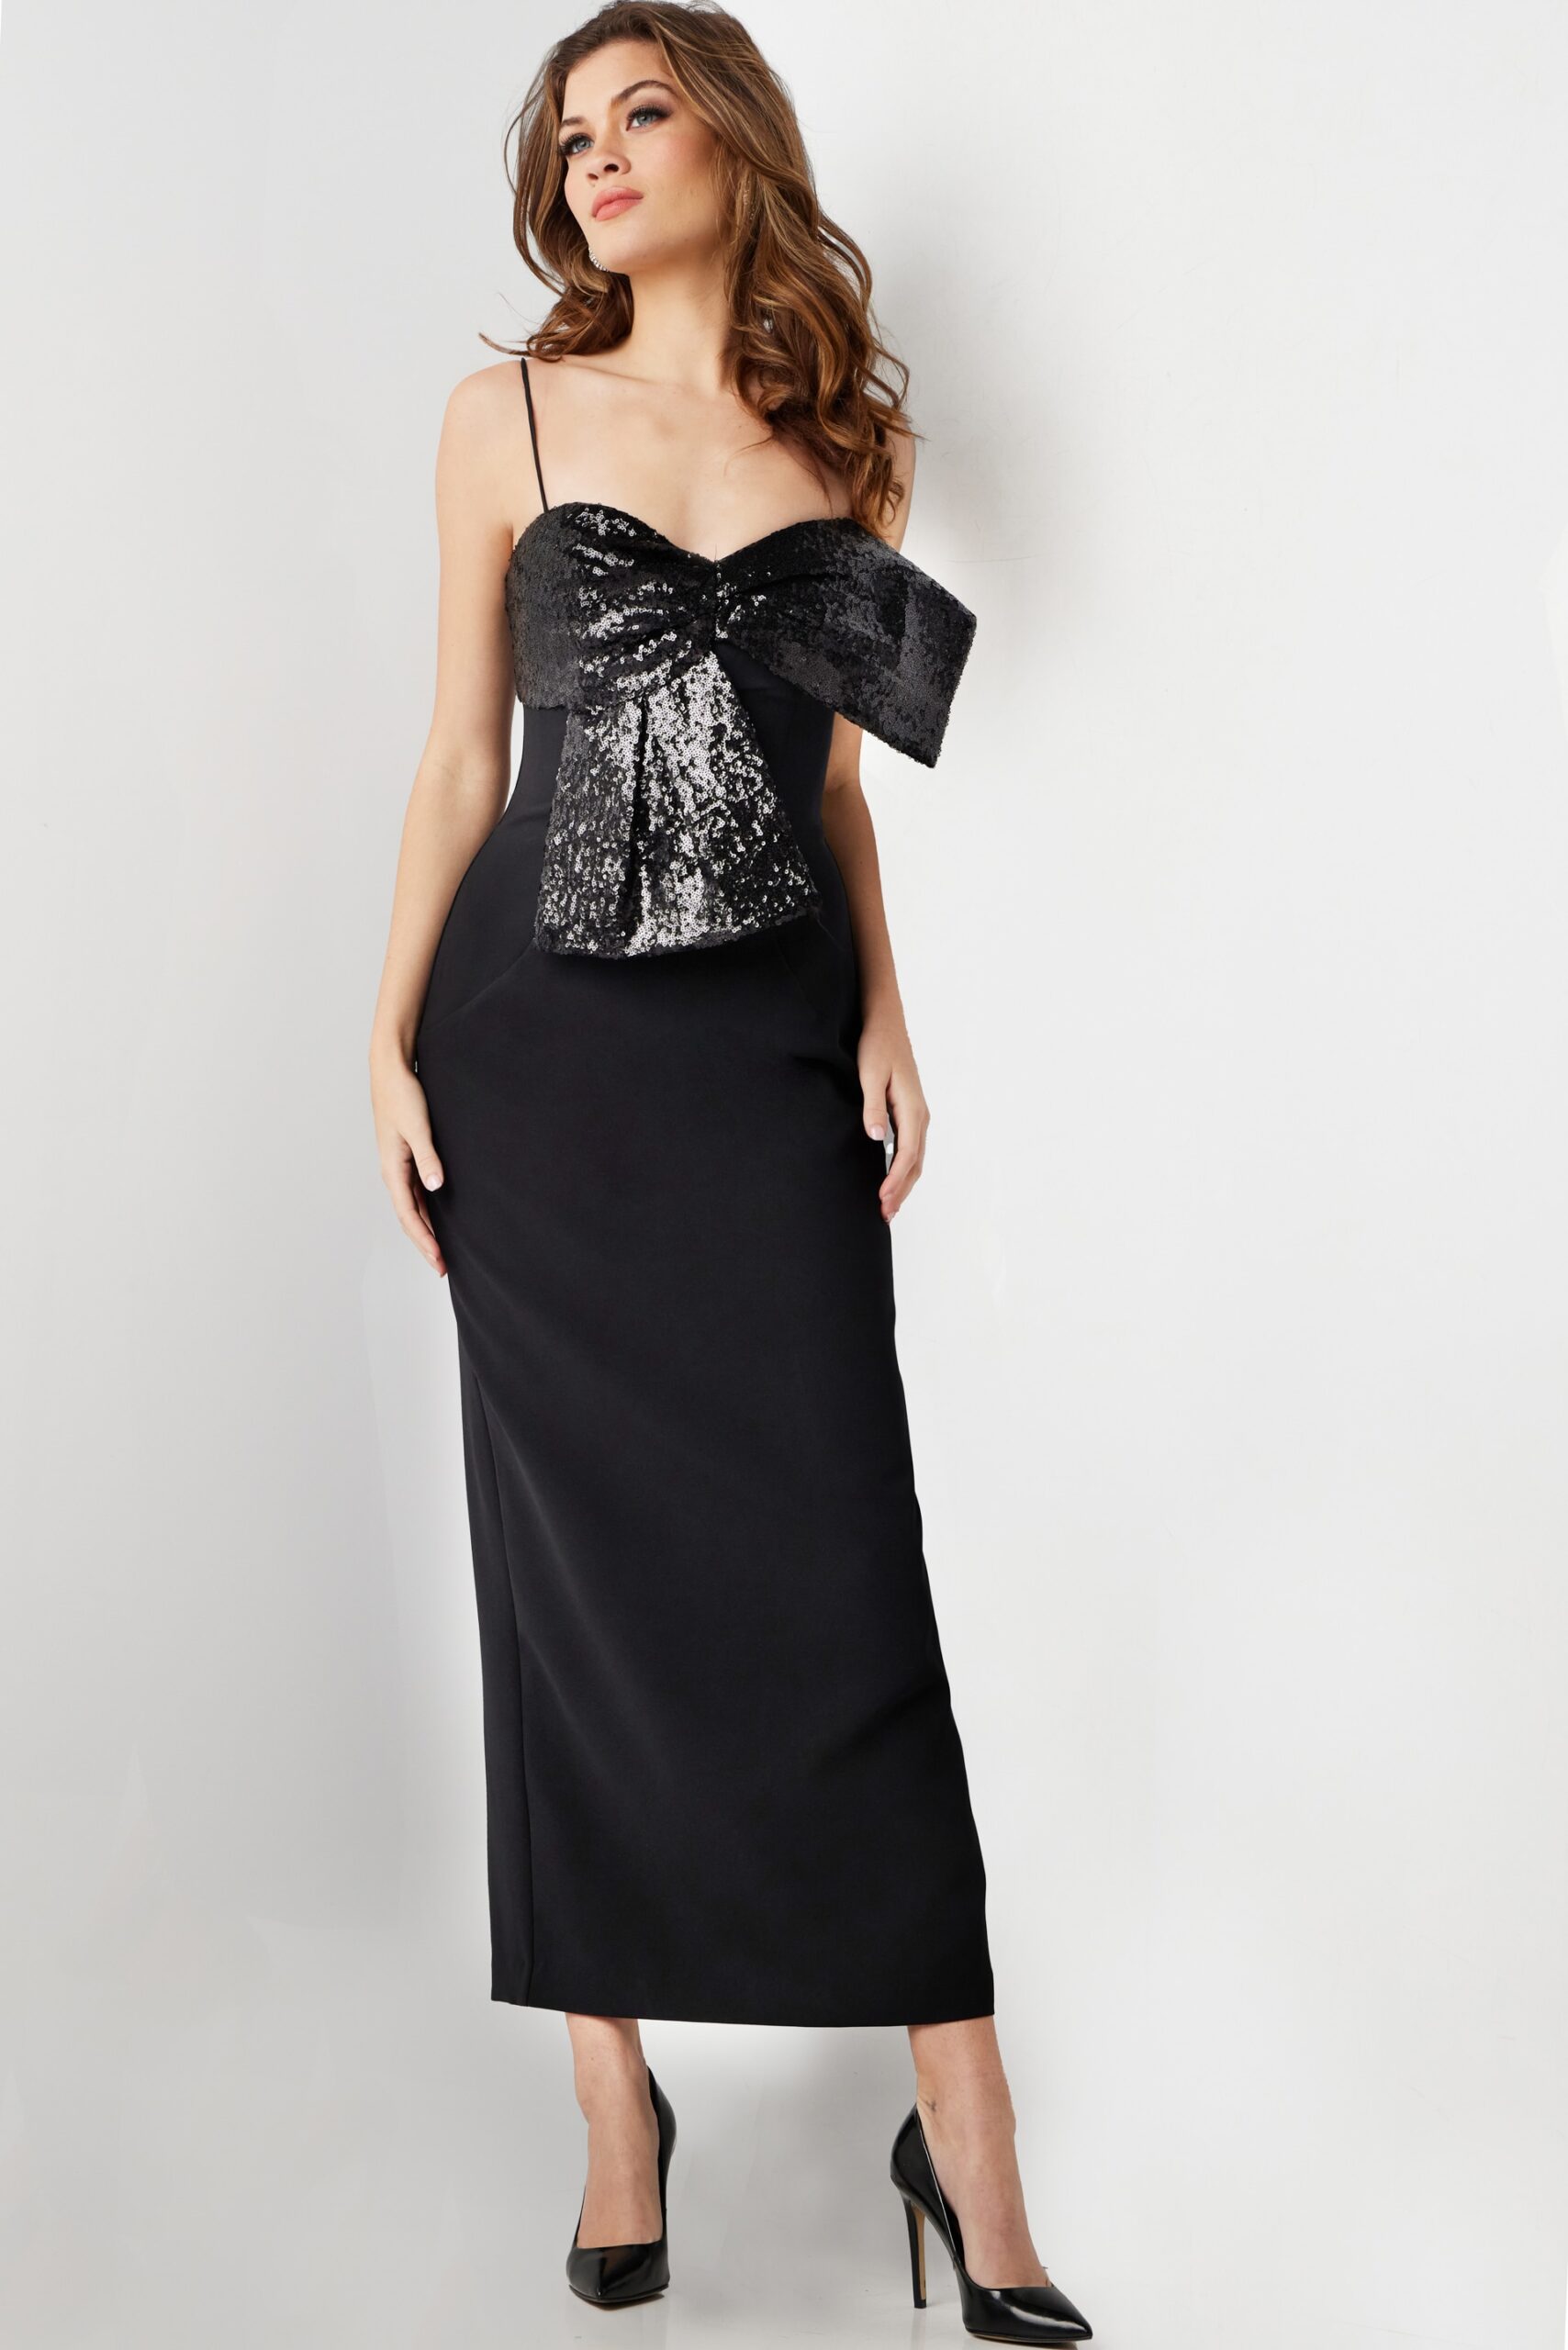 Black Embellished Bodice Tea Length Formal Dress 25745